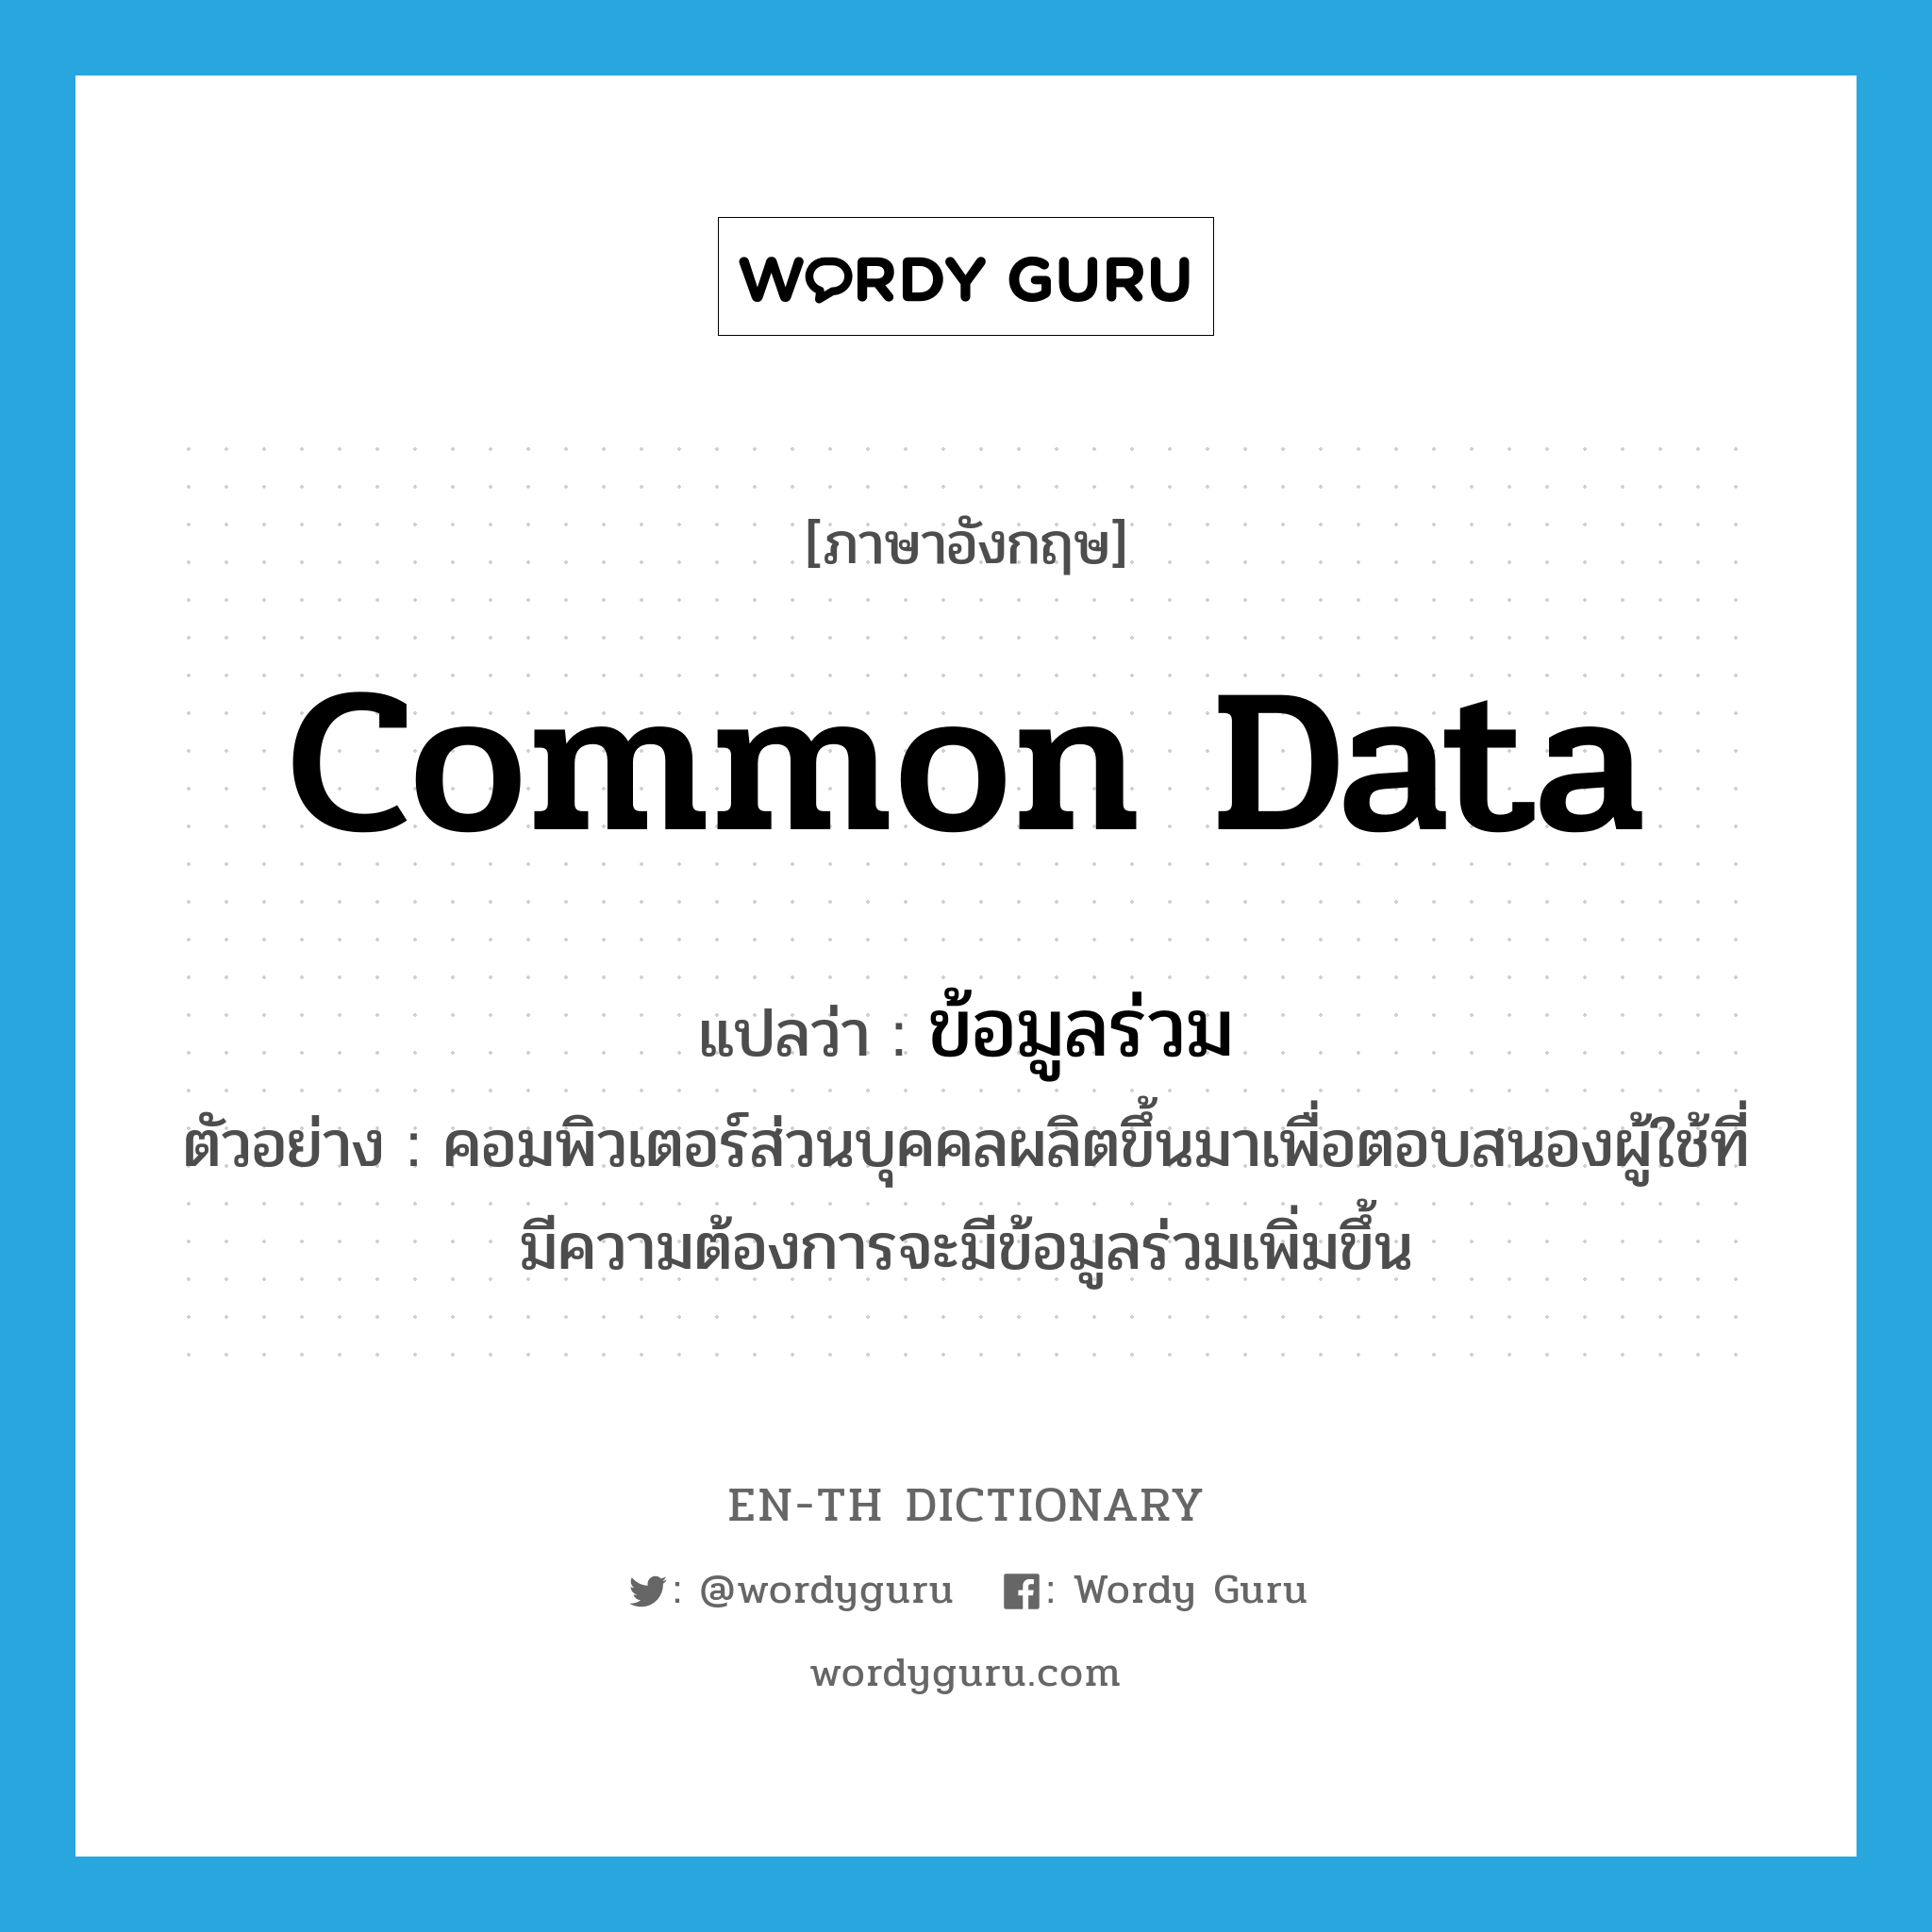 common data แปลว่า?, คำศัพท์ภาษาอังกฤษ common data แปลว่า ข้อมูลร่วม ประเภท N ตัวอย่าง คอมพิวเตอร์ส่วนบุคคลผลิตขึ้นมาเพื่อตอบสนองผู้ใช้ที่มีความต้องการจะมีข้อมูลร่วมเพิ่มขึ้น หมวด N